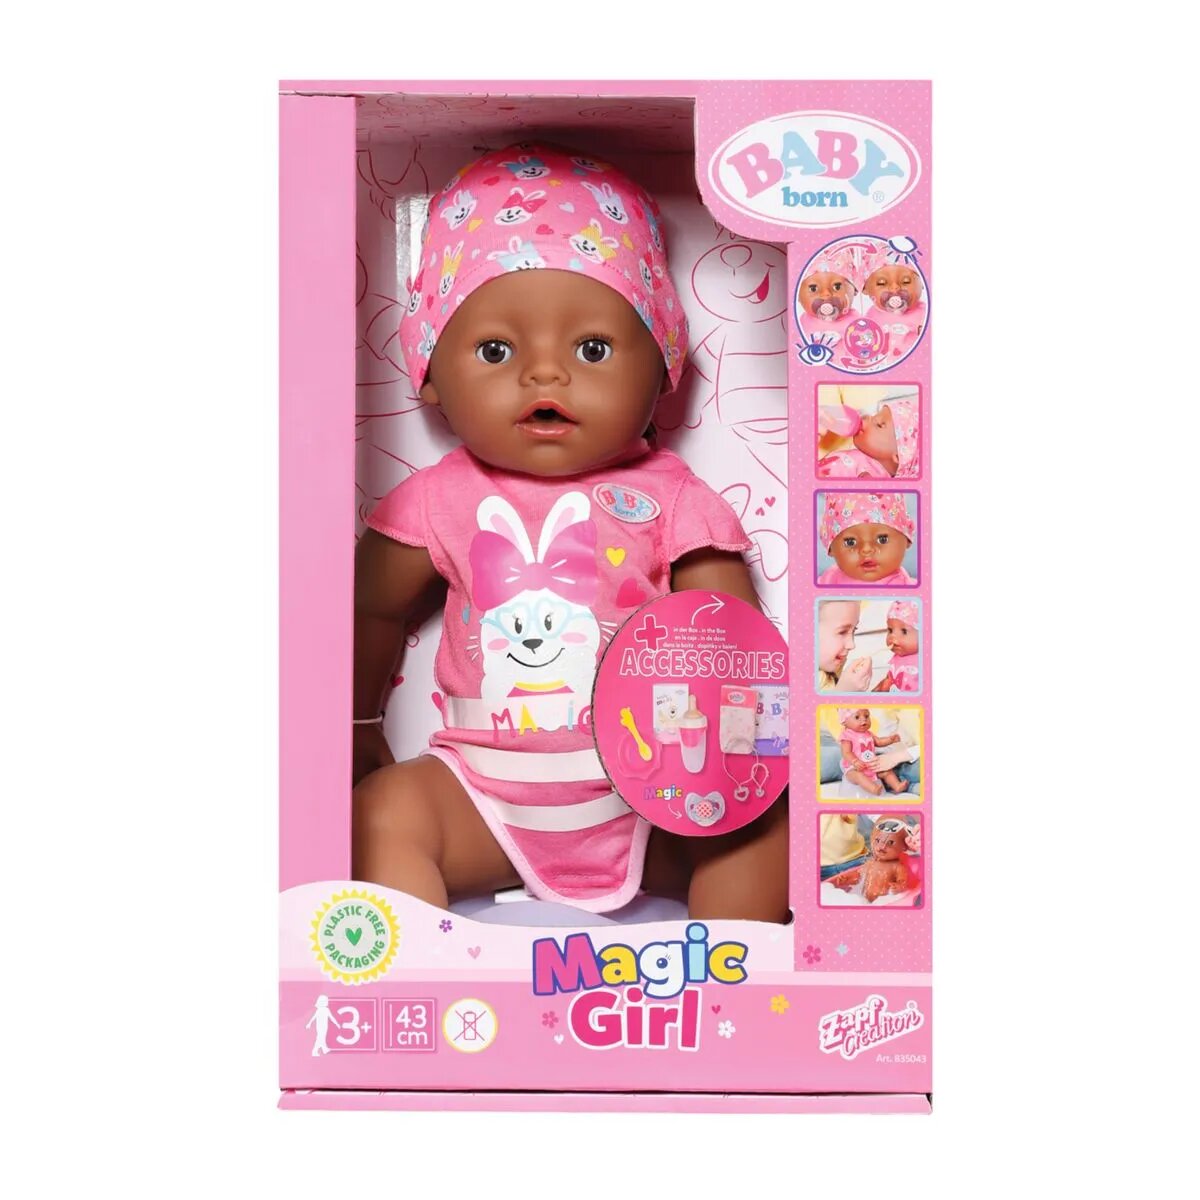 BABY born® Magic Girl DoC – Schweiger Spielwaren 43cm